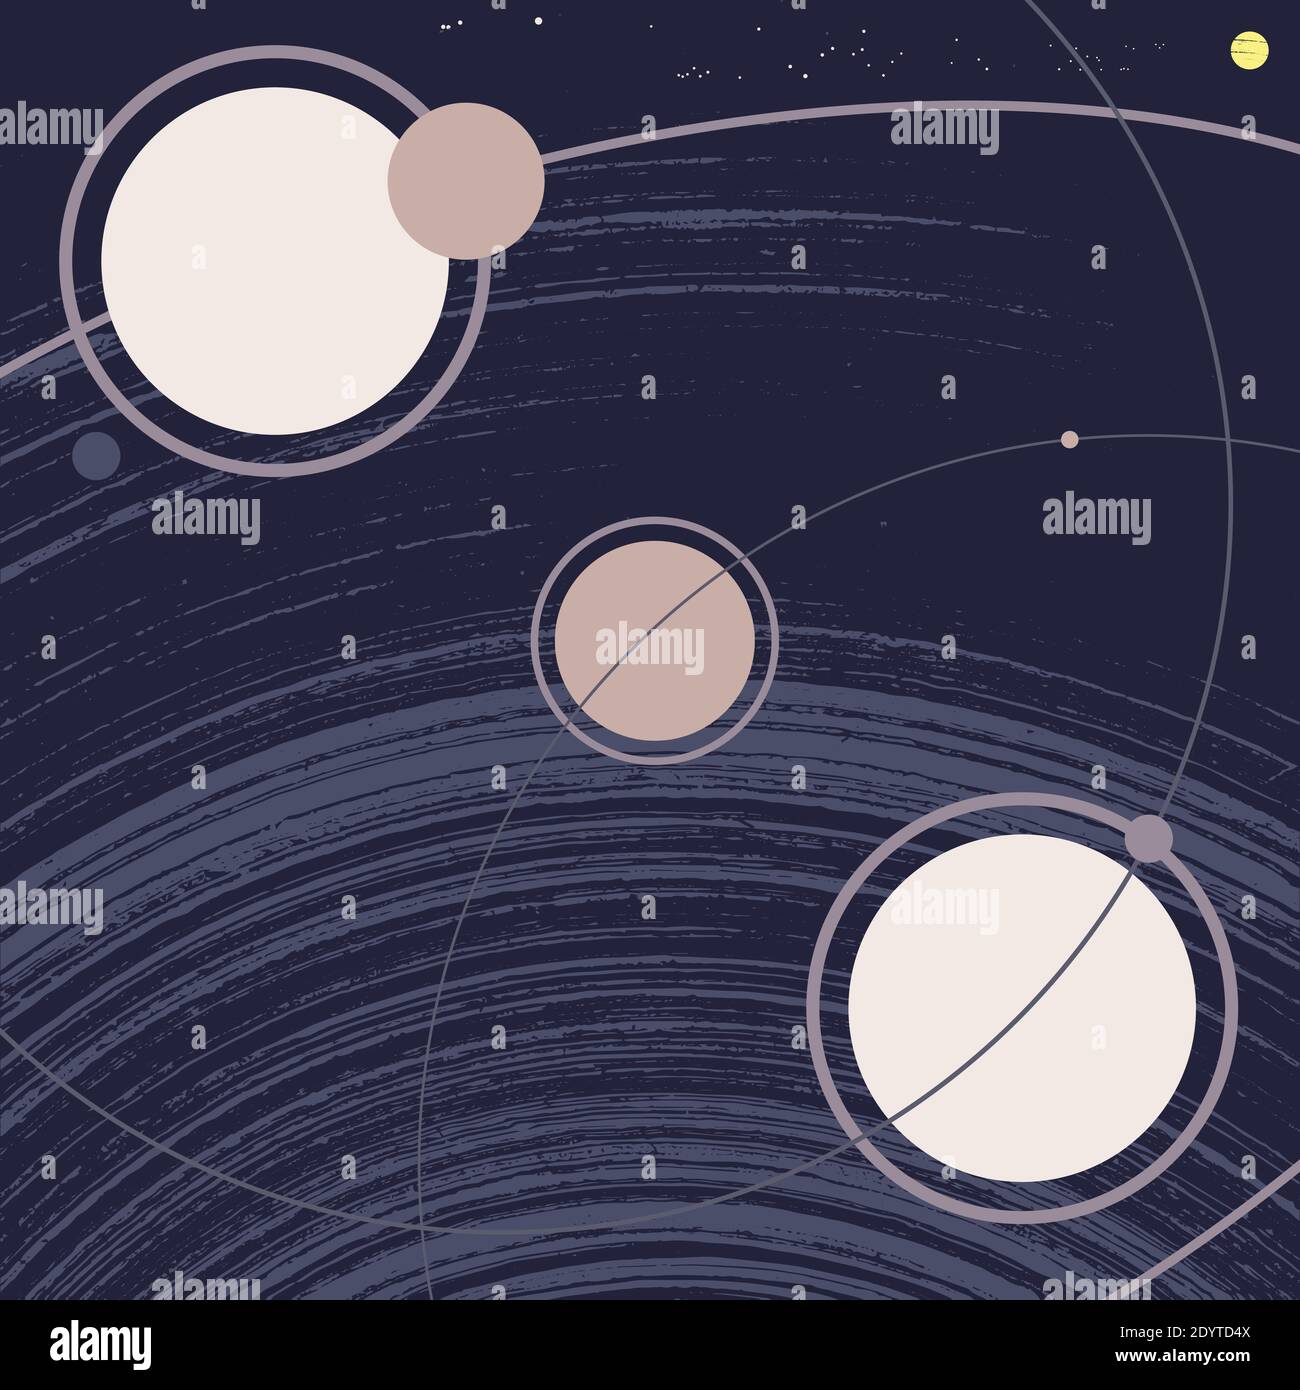 Weltraumgalaxie mit Planeten, Umlaufbahnen, Satelliten, Monden, Sonne und Sternen. Retro-Stil Grunge Vektor-Illustration. Klassisches, minimalistisches Poster Stock Vektor